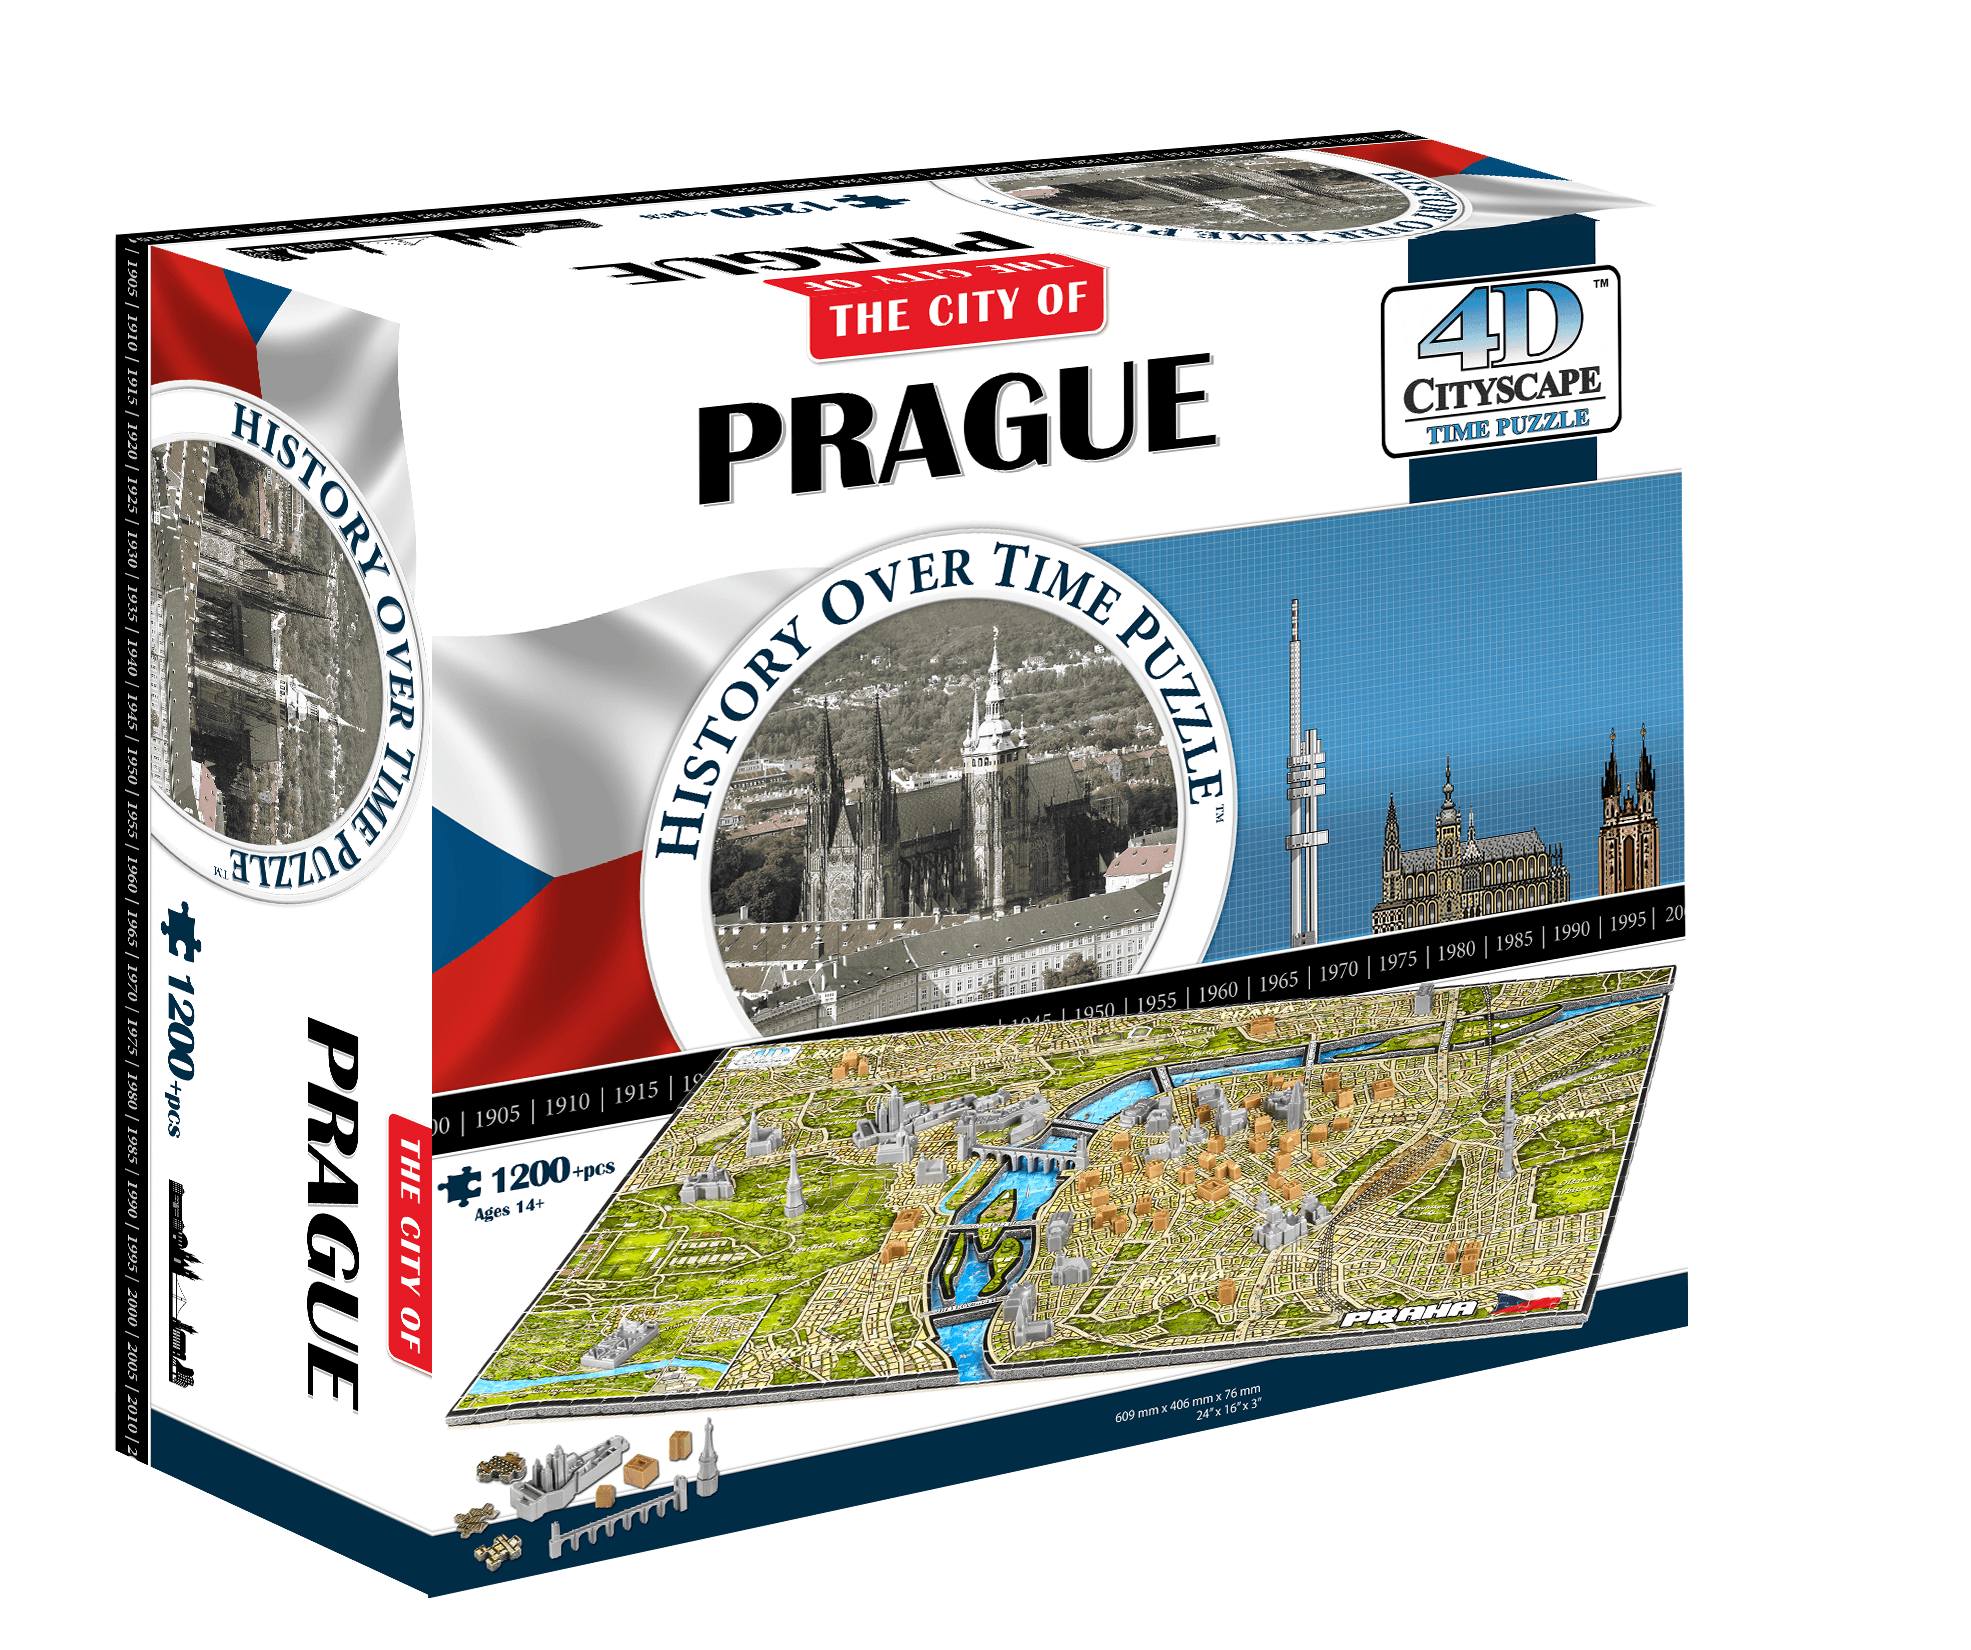 4D Cityscape Prague Time Puzzle - 4DPuzz - 4DPuzz
